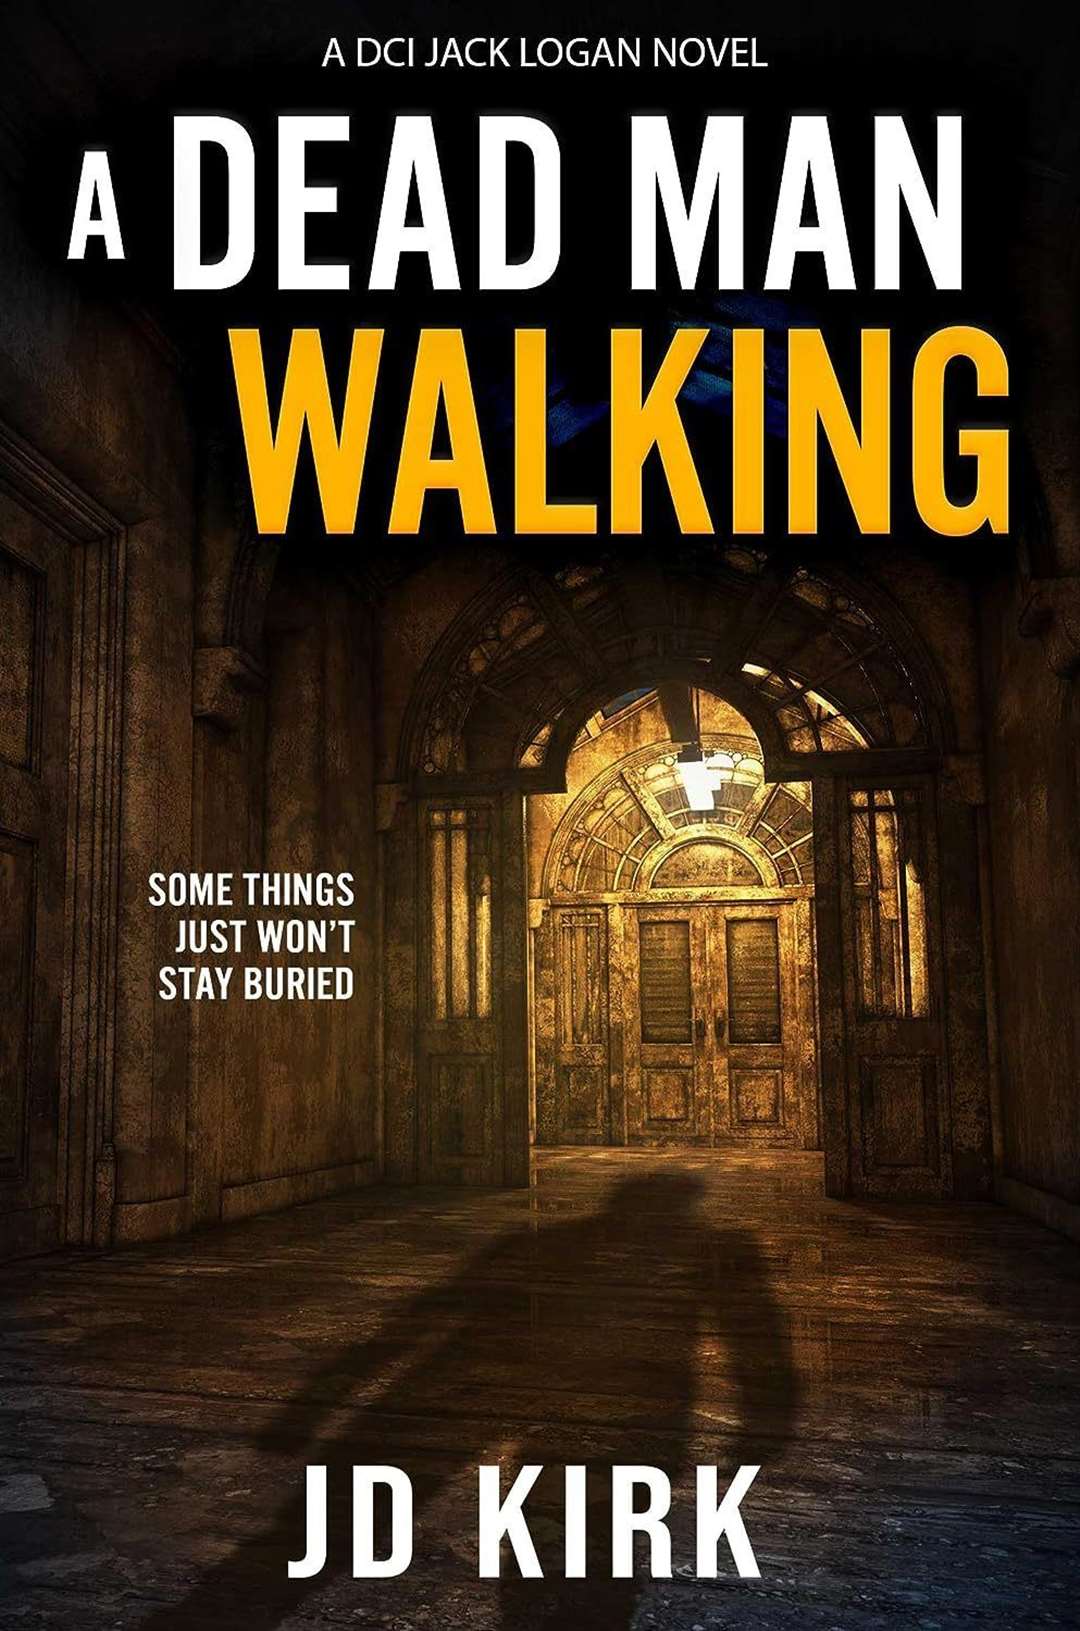 A Dead Man Walking by JD Kirk.